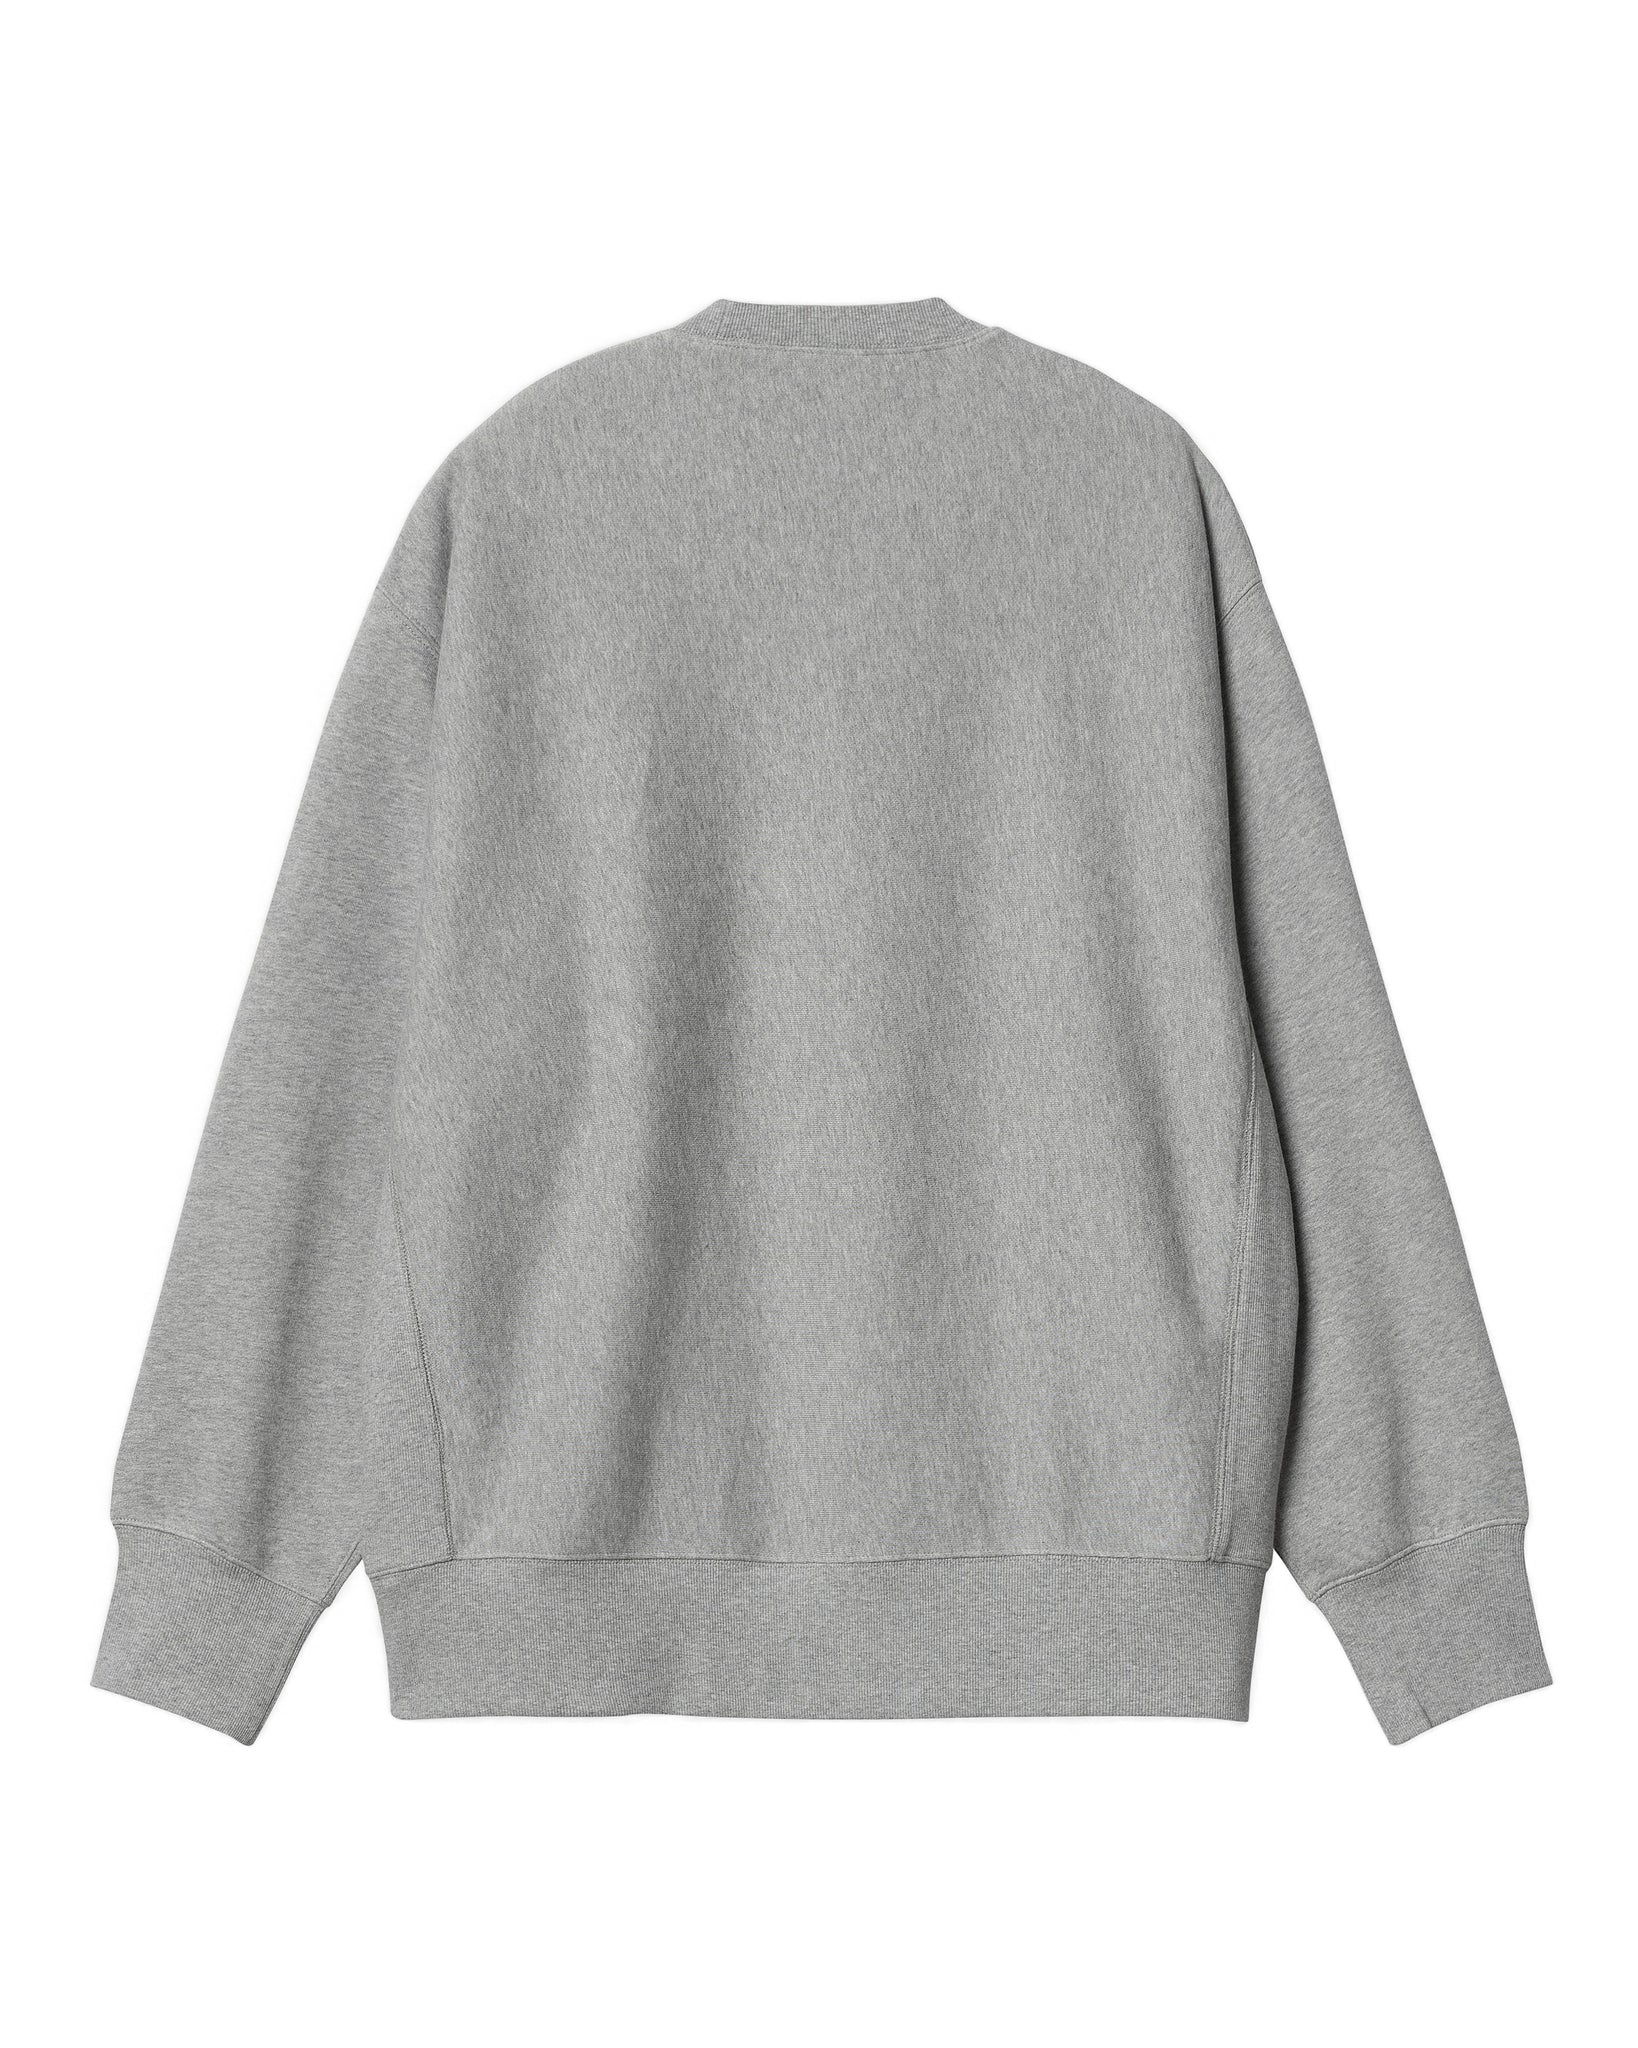 Dawson Sweatshirt - Grey Heather